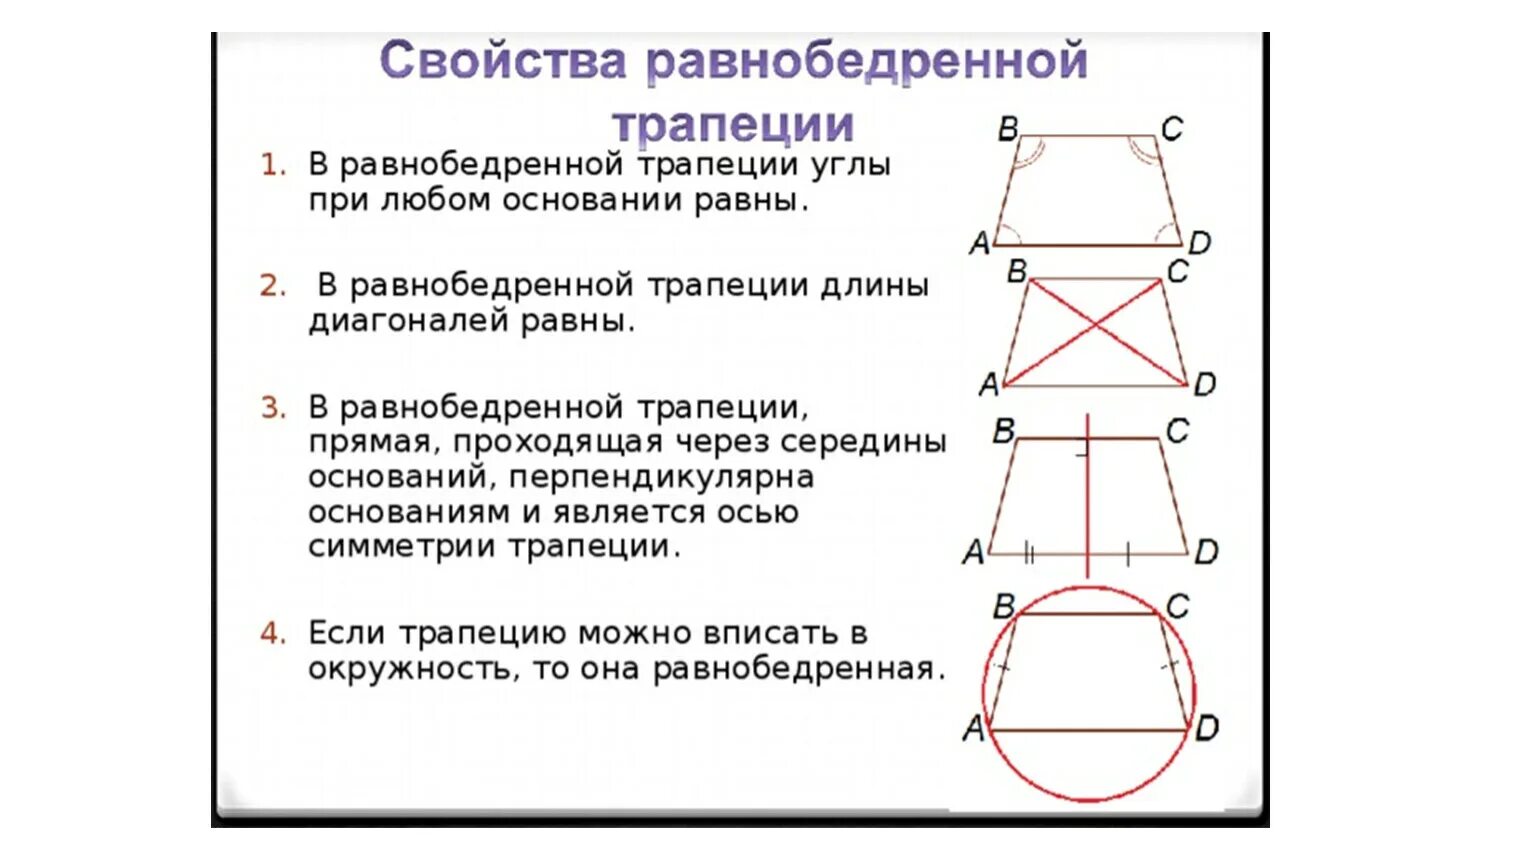 Диагональ трап. Основное свойство равнобедренной трапеции. Основные свойства равнобедренной трапеции. Свойства равнобокой равнобедренной трапеции. Свойства диагоналей равнобедренной трапеции.